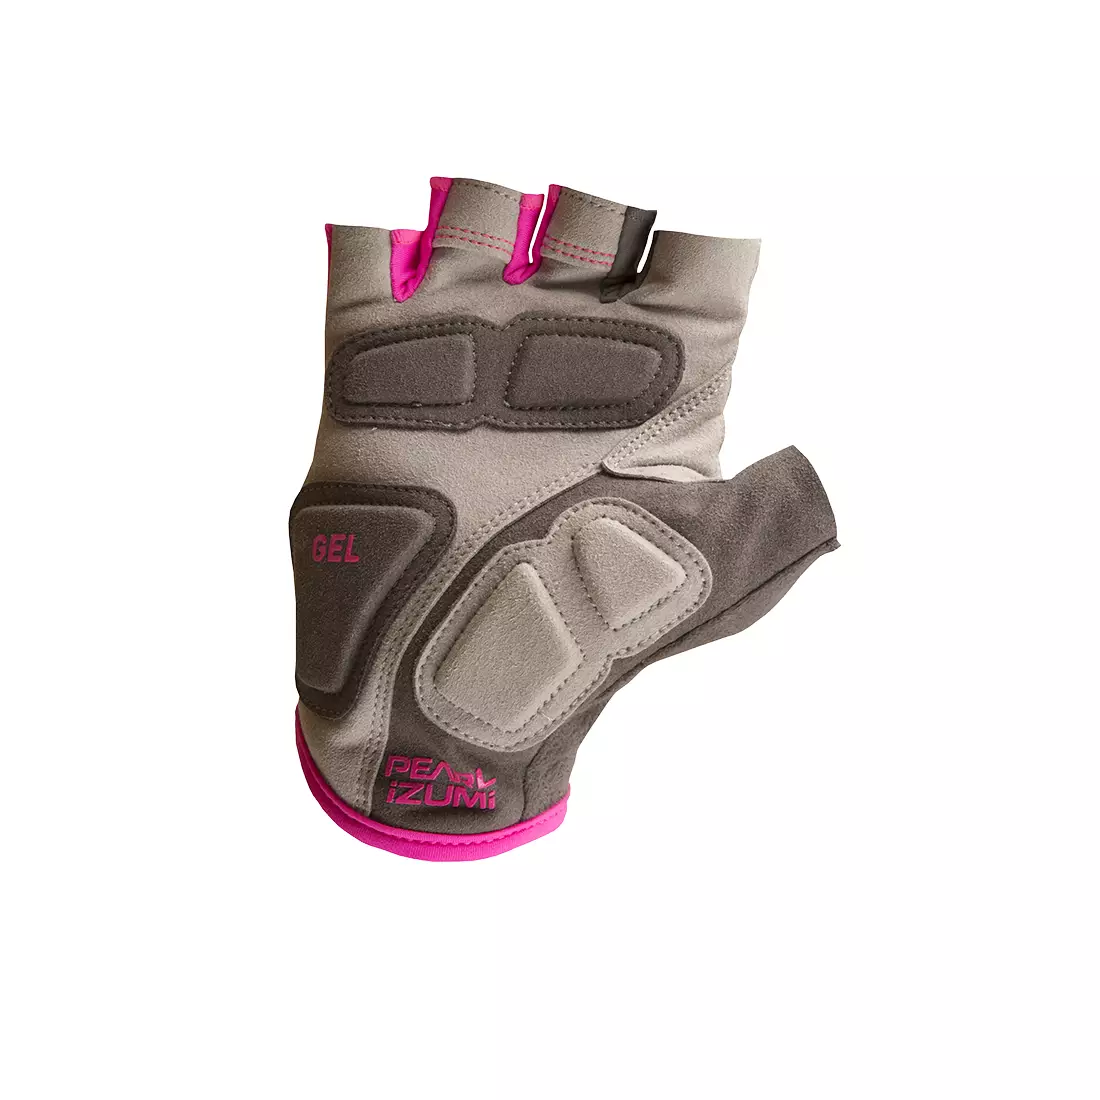 Dámské cyklistické rukavice PEARL IZUMI ELITE, GEL 14241602-4SS jasně růžové